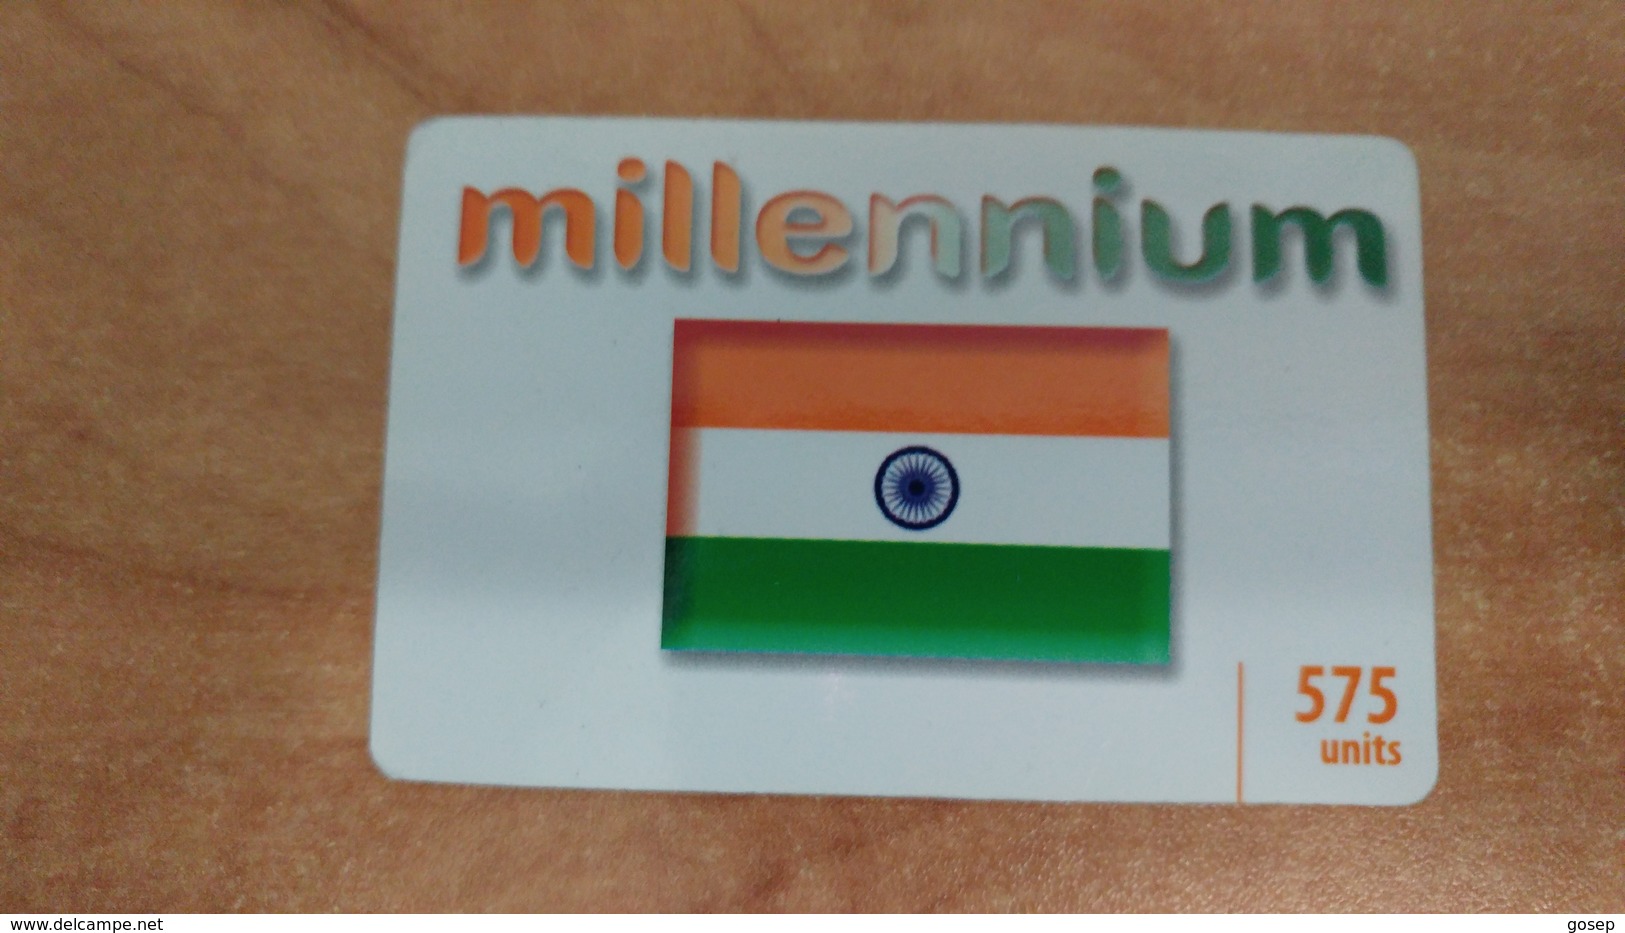 Israel-millennium-(2)-(12/2011)-(575units)used Card - India